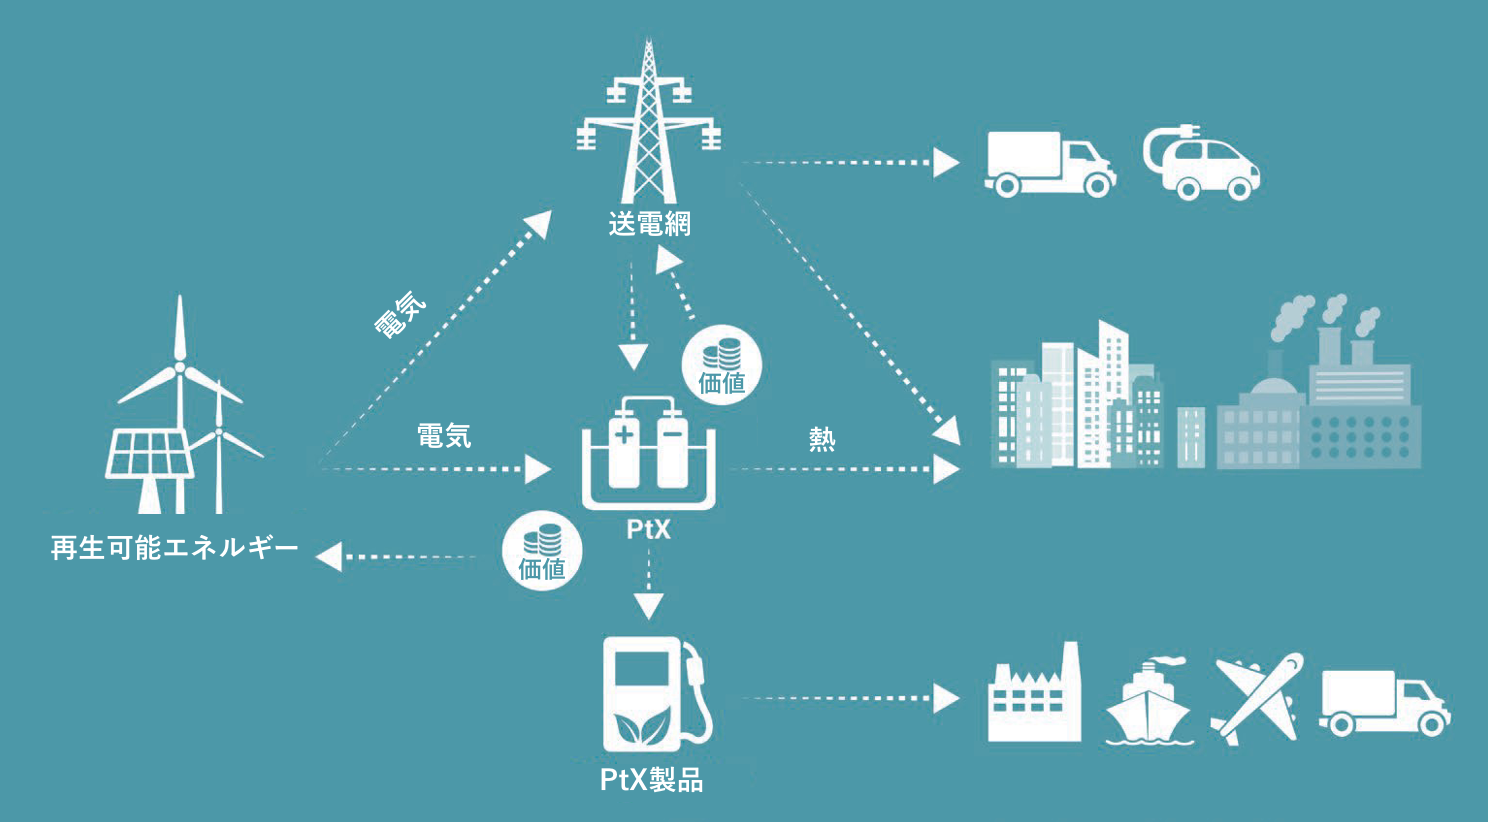 図12. PtXは、電力供給と送電網の価値を創造し、地域熱供給のための熱を提供し、輸送と産業のためのグリーン燃料を生産することができる。（出典：デンマークエネルギー庁）